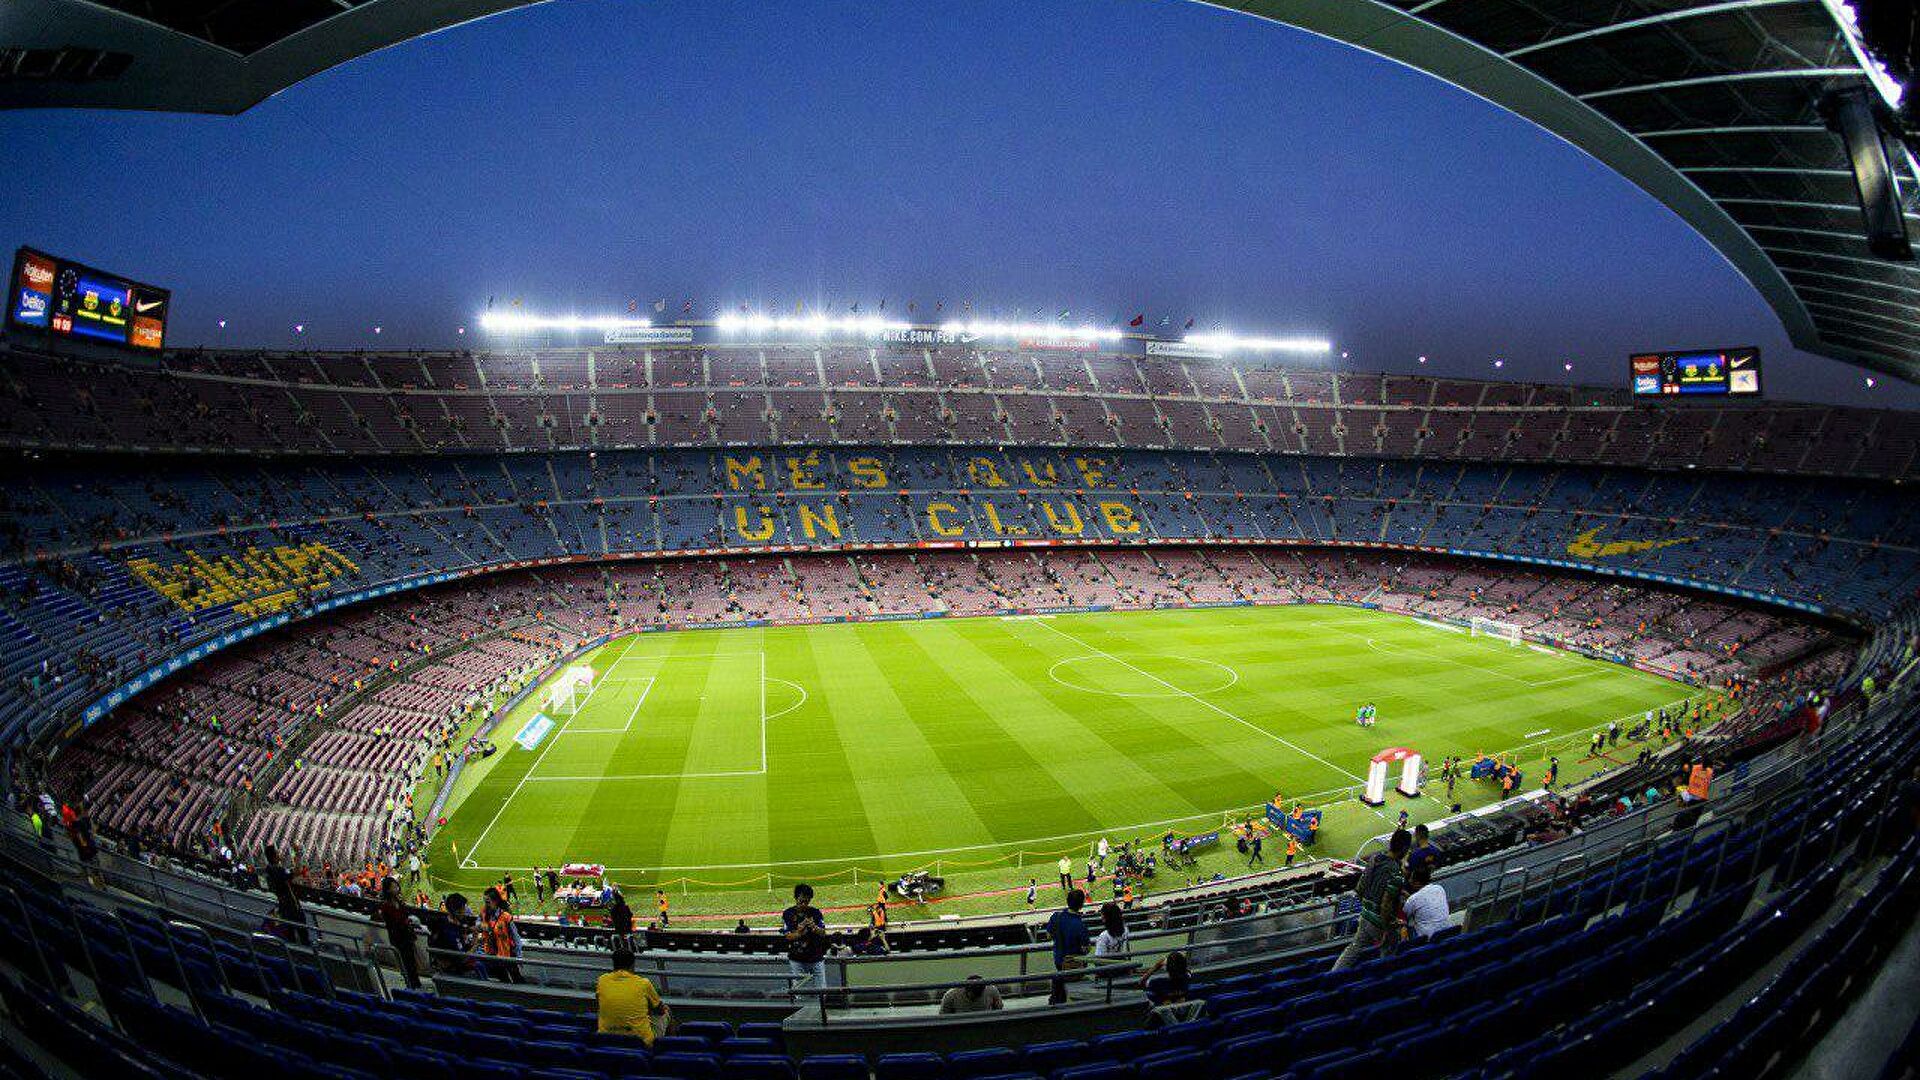 Ла кампа. Испания стадион Камп ноу. Барселона футбольный стадион Камп ноу. Камп ноу стадион 2020. Барселона стадион Camp nou.